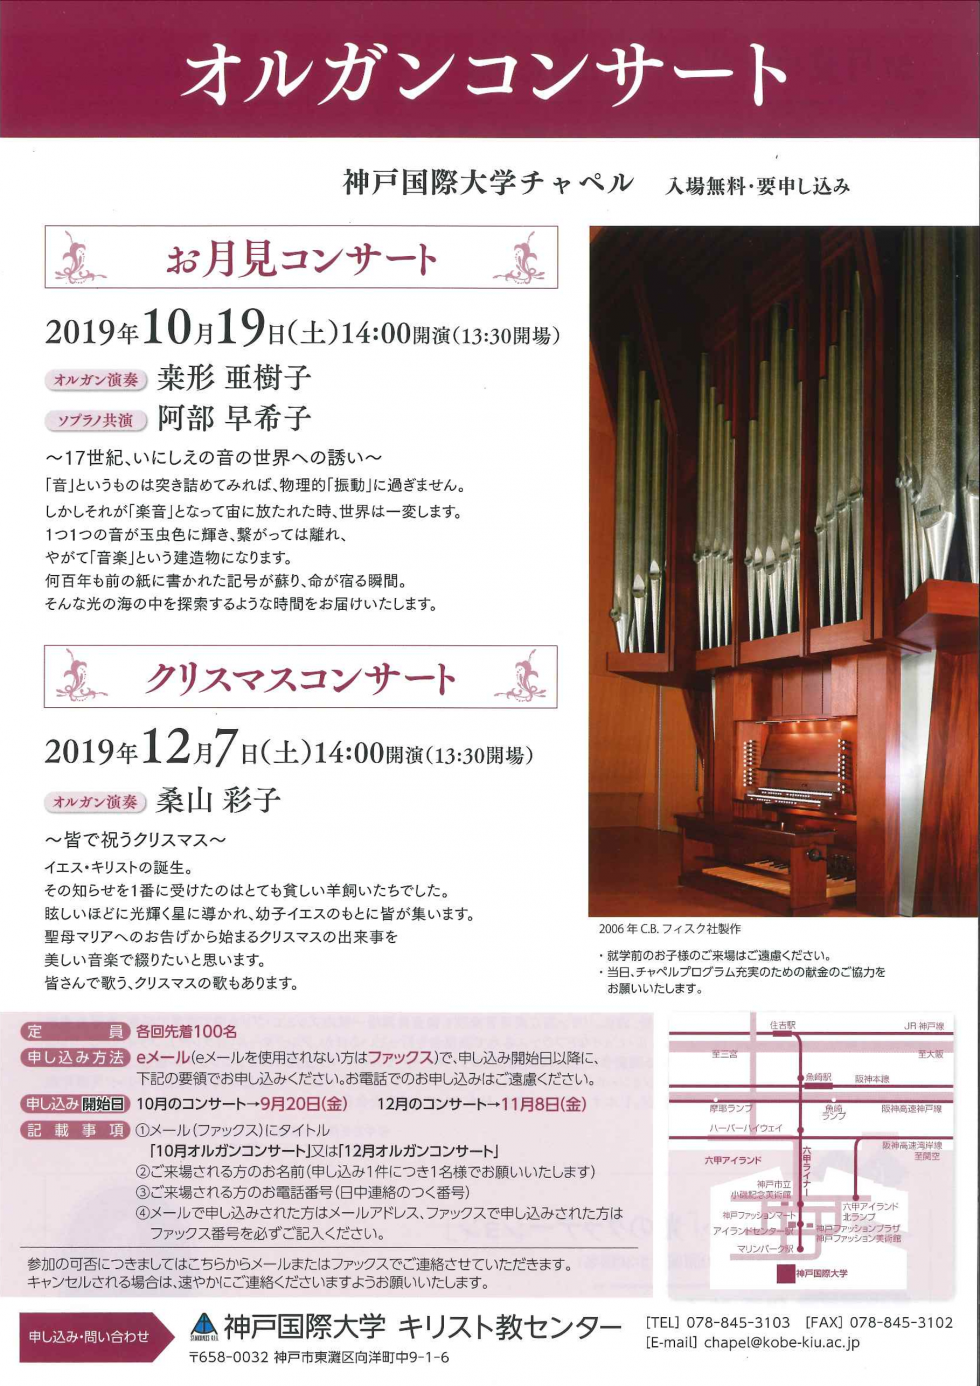 パイプオルガンコンサート お月見コンサート 音の光の海へ を10月19日に開催いたします 入場無料 要申込 神戸国際大学 St Michael S Kiu